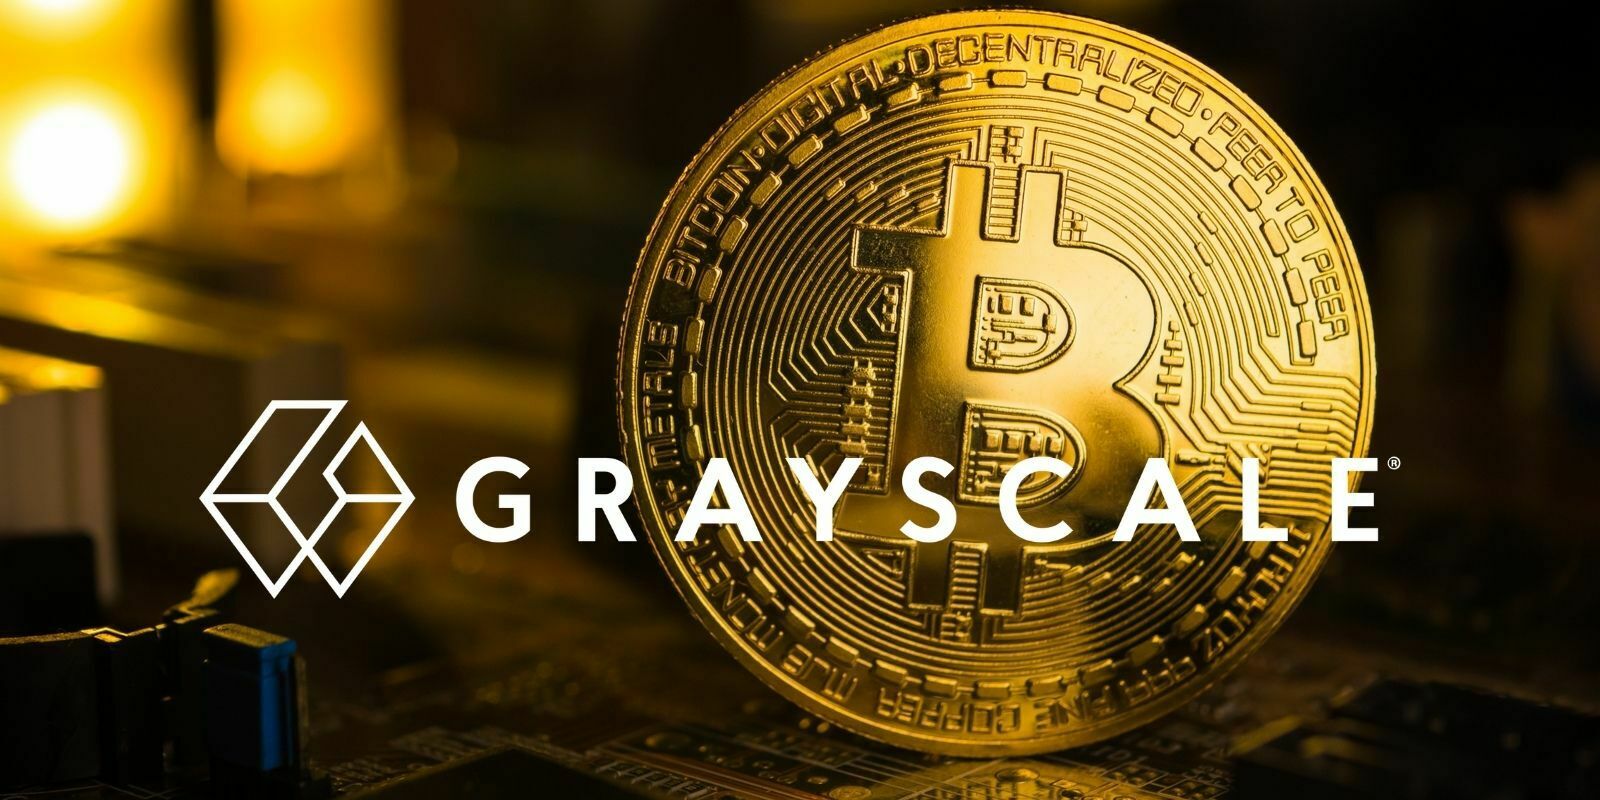 Grayscale contrôle désormais 2,4% de l'offre Bitcoin (BTC) en circulation